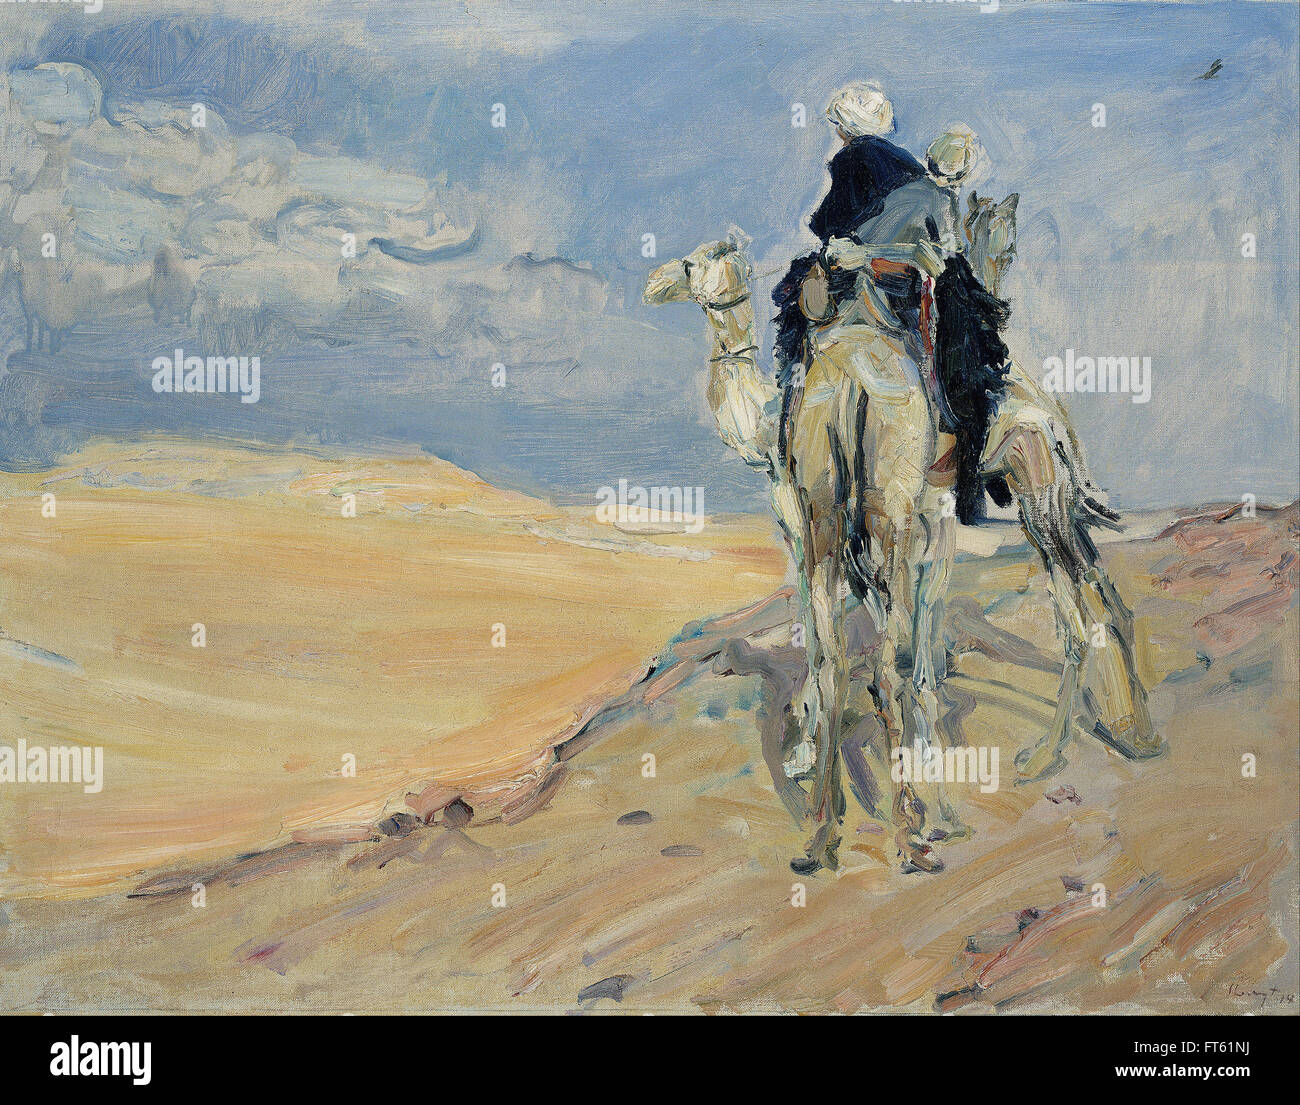 Max Slevogt - tempête dans le désert libyen - Galerie Neue Meister - nouveaux Masters Gallery Banque D'Images